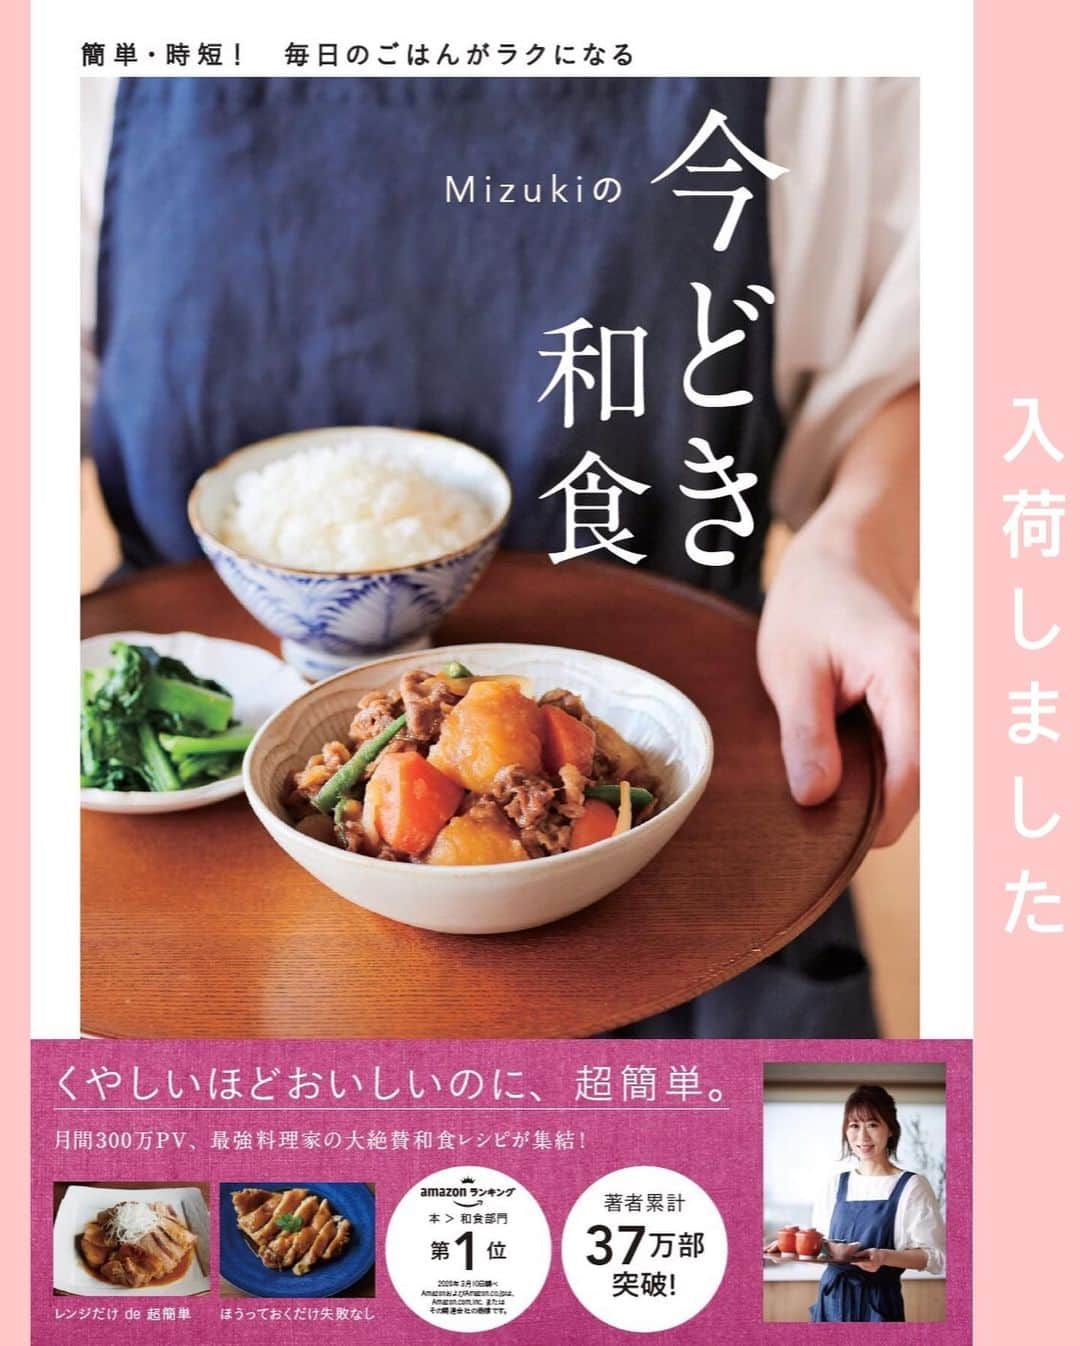 Mizuki【料理ブロガー・簡単レシピ】さんのインスタグラム写真 - (Mizuki【料理ブロガー・簡単レシピ】Instagram)「・﻿ 【レシピ】ーーーーーーーーーーーー﻿ ♡あっさりコクうま！塩焼きそば♡﻿ ーーーーーーーーーーーーーーーーー﻿ ﻿ ﻿ ﻿ おはようございます(*^^*)﻿ ﻿ 今日は夏休みごはんにも最適な﻿ ［塩焼きそば］のご紹介です♩﻿ あっさりコクのある味わいで﻿ ハマる美味しさですよ〜♡﻿ ﻿ 作り方は超簡単(*´艸`)﻿ 具は豚肉とキャベツだけ！﻿ 味付けは合わせ調味料で失敗なし♩﻿ 5分程度でささっとできて﻿ もちろんコスパも抜群です♡﻿ ﻿ ﻿ ﻿ ーーーーーーーーーーーーーーーーーーーー﻿ 【2人分】﻿ 焼きそば...2玉﻿ 豚バラ薄切り肉...100g﻿ キャベツ...3枚(150g)﻿ にんにく...1かけ﻿ サラダ油...小1﻿ ●酒...大1﻿ ●鶏がらスープ・ごま油...各大1/2﻿ ●塩...小1/5﻿ 粗挽き黒こしょう...適量﻿ ﻿ 1.豚肉は3cm長さに切る。キャベツはざく切りにする。にんにくは薄切りにする。●は合わせておく。焼きそばは袋に一箇所穴を開け、600Wのレンジで2分加熱する。﻿ 2.フライパンにサラダ油を中火で熱し、豚肉とにんにくを炒める。色が変わったらキャベツも加え、しんなりするまで炒める。﻿ 3.麺を加えてほぐし、●を加えて炒め合わせる。器に盛り、粗挽き黒こしょうを振る。﻿ ﻿ ーーーーーーーーーーーーーーーーーーーー﻿ ﻿ ﻿ ﻿ 《ポイント》﻿ ♦︎にんにくがなければチューブ(3cmくらい)でもOK♩その場合は合わせ調味料に加えて下さい♩﻿ ♦︎麺はレンチンしておくとほぐれやすくなります♩﻿ ﻿ ﻿ ﻿ ﻿ ﻿ ﻿ ﻿ ＿＿＿＿＿＿＿＿＿＿＿＿＿＿＿＿＿﻿ 🎀6刷重版しました🎀﻿ 混ぜて焼くだけ。はじめてでも失敗しない！﻿ 【#ホットケーキミックスのお菓子 】﻿ ﻿ 一冊まるっとホケミスイーツ♩﻿ 普段のおやつから﻿ 特別な日にも使えるレシピを﻿ この一冊に詰め込みました(*^^*)﻿ ホットケーキミックスを使えば﻿ 簡単に本格的なお菓子が作れますよ♡﻿ ＿＿＿＿＿＿＿＿＿＿＿＿＿＿＿＿＿﻿ ﻿ ﻿ ﻿ ＿＿＿＿＿＿＿＿＿＿＿＿＿＿＿＿＿＿＿﻿ 📕6刷重版しました📕﻿ 簡単・時短！ 毎日のごはんがラクになる﻿ ✨🦋 【 #Mizukiの今どき和食 】🦋✨﻿ ＿＿＿＿＿＿＿＿＿＿＿＿＿＿＿＿＿＿＿﻿ なるべく少ない材料で﻿ 手間も時間も省きながら﻿ 簡単にできるおいしい和食レシピ♩﻿ 簡単に失敗なくマスターできる一冊で﻿ もっと気軽に、カジュアルに﻿ 和食を楽しんで下さいね(*^^*)﻿ ＿＿＿＿＿＿＿＿＿＿＿＿＿＿＿＿＿＿＿﻿ ﻿ ⭐️ストーリー、ハイライト、プロフ画面に﻿ 本のURLを貼らせていただいております♩﻿ →(@mizuki_31cafe )﻿ ﻿ ﻿ ﻿ ﻿ ﻿ #焼きそば#夏休みごはん#夏休み#ランチ#麺#コスパ#キャベツ#Mizuki#簡単レシピ#時短レシピ#節約レシピ#料理#レシピ#フーディーテーブル#マカロニメイト#おうちごはん#デリスタグラマー#料理好きな人と繋がりたい#おうちごはんlover#写真好きな人と繋がりたい#foodpic#cooking#recipe#lin_stagrammer#foodporn#yummy#塩焼きそばm」8月7日 6時55分 - mizuki_31cafe